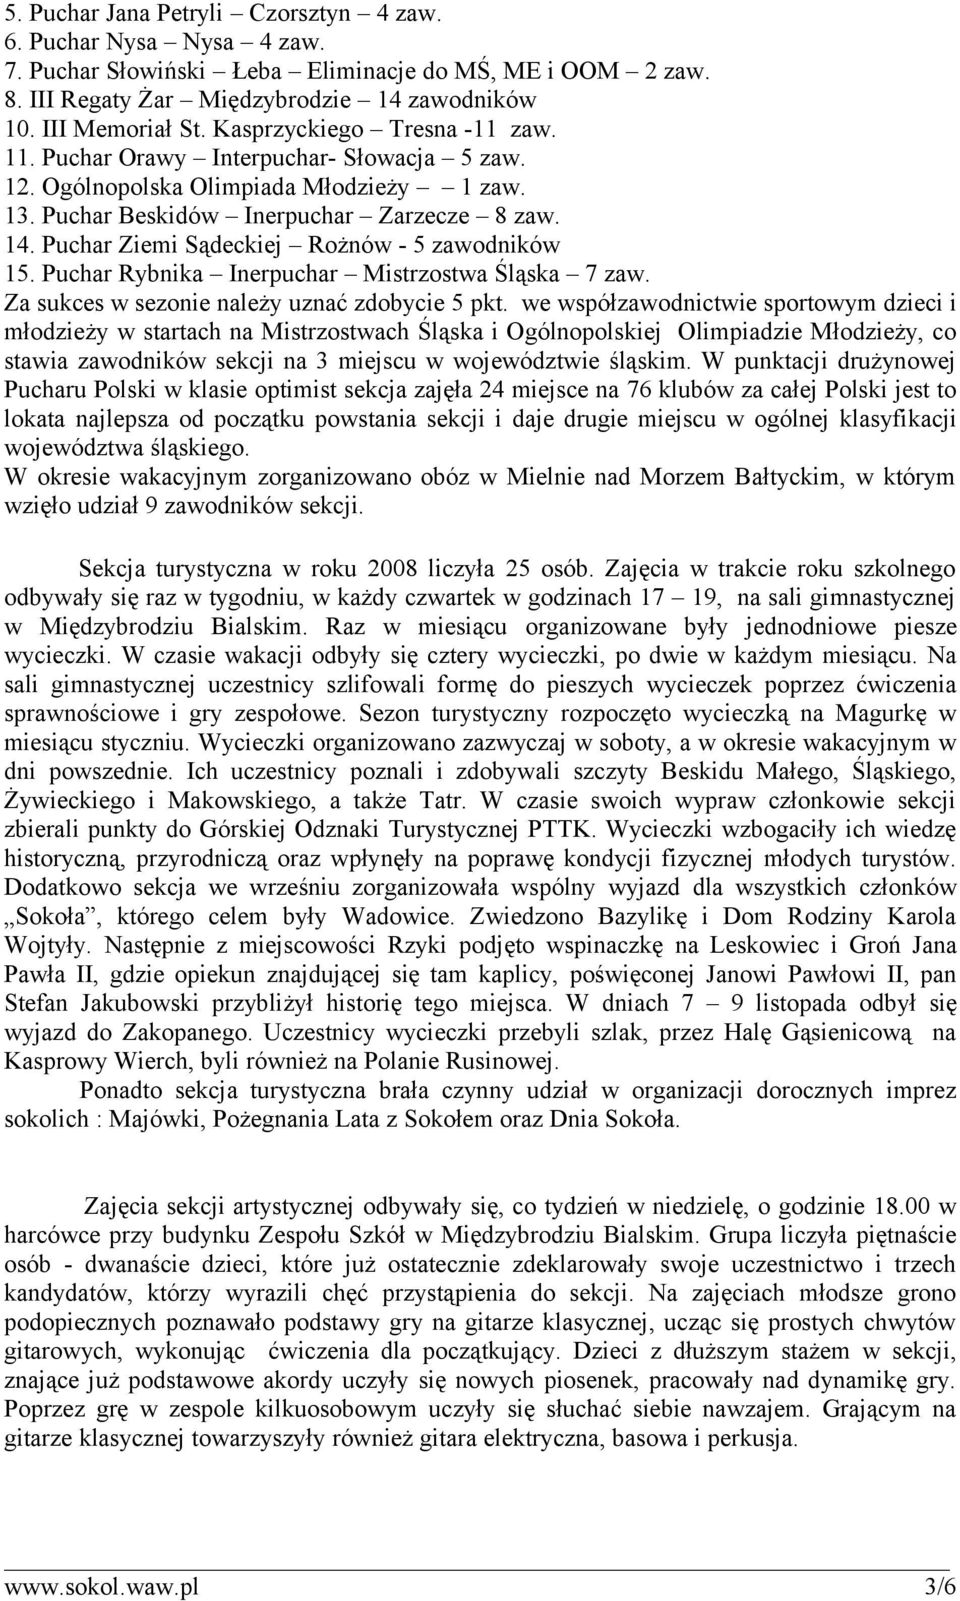 Puchar Ziemi Sądeckiej Rożnów - 5 zawodników 15. Puchar Rybnika Inerpuchar Mistrzostwa Śląska 7 zaw. Za sukces w sezonie należy uznać zdobycie 5 pkt.